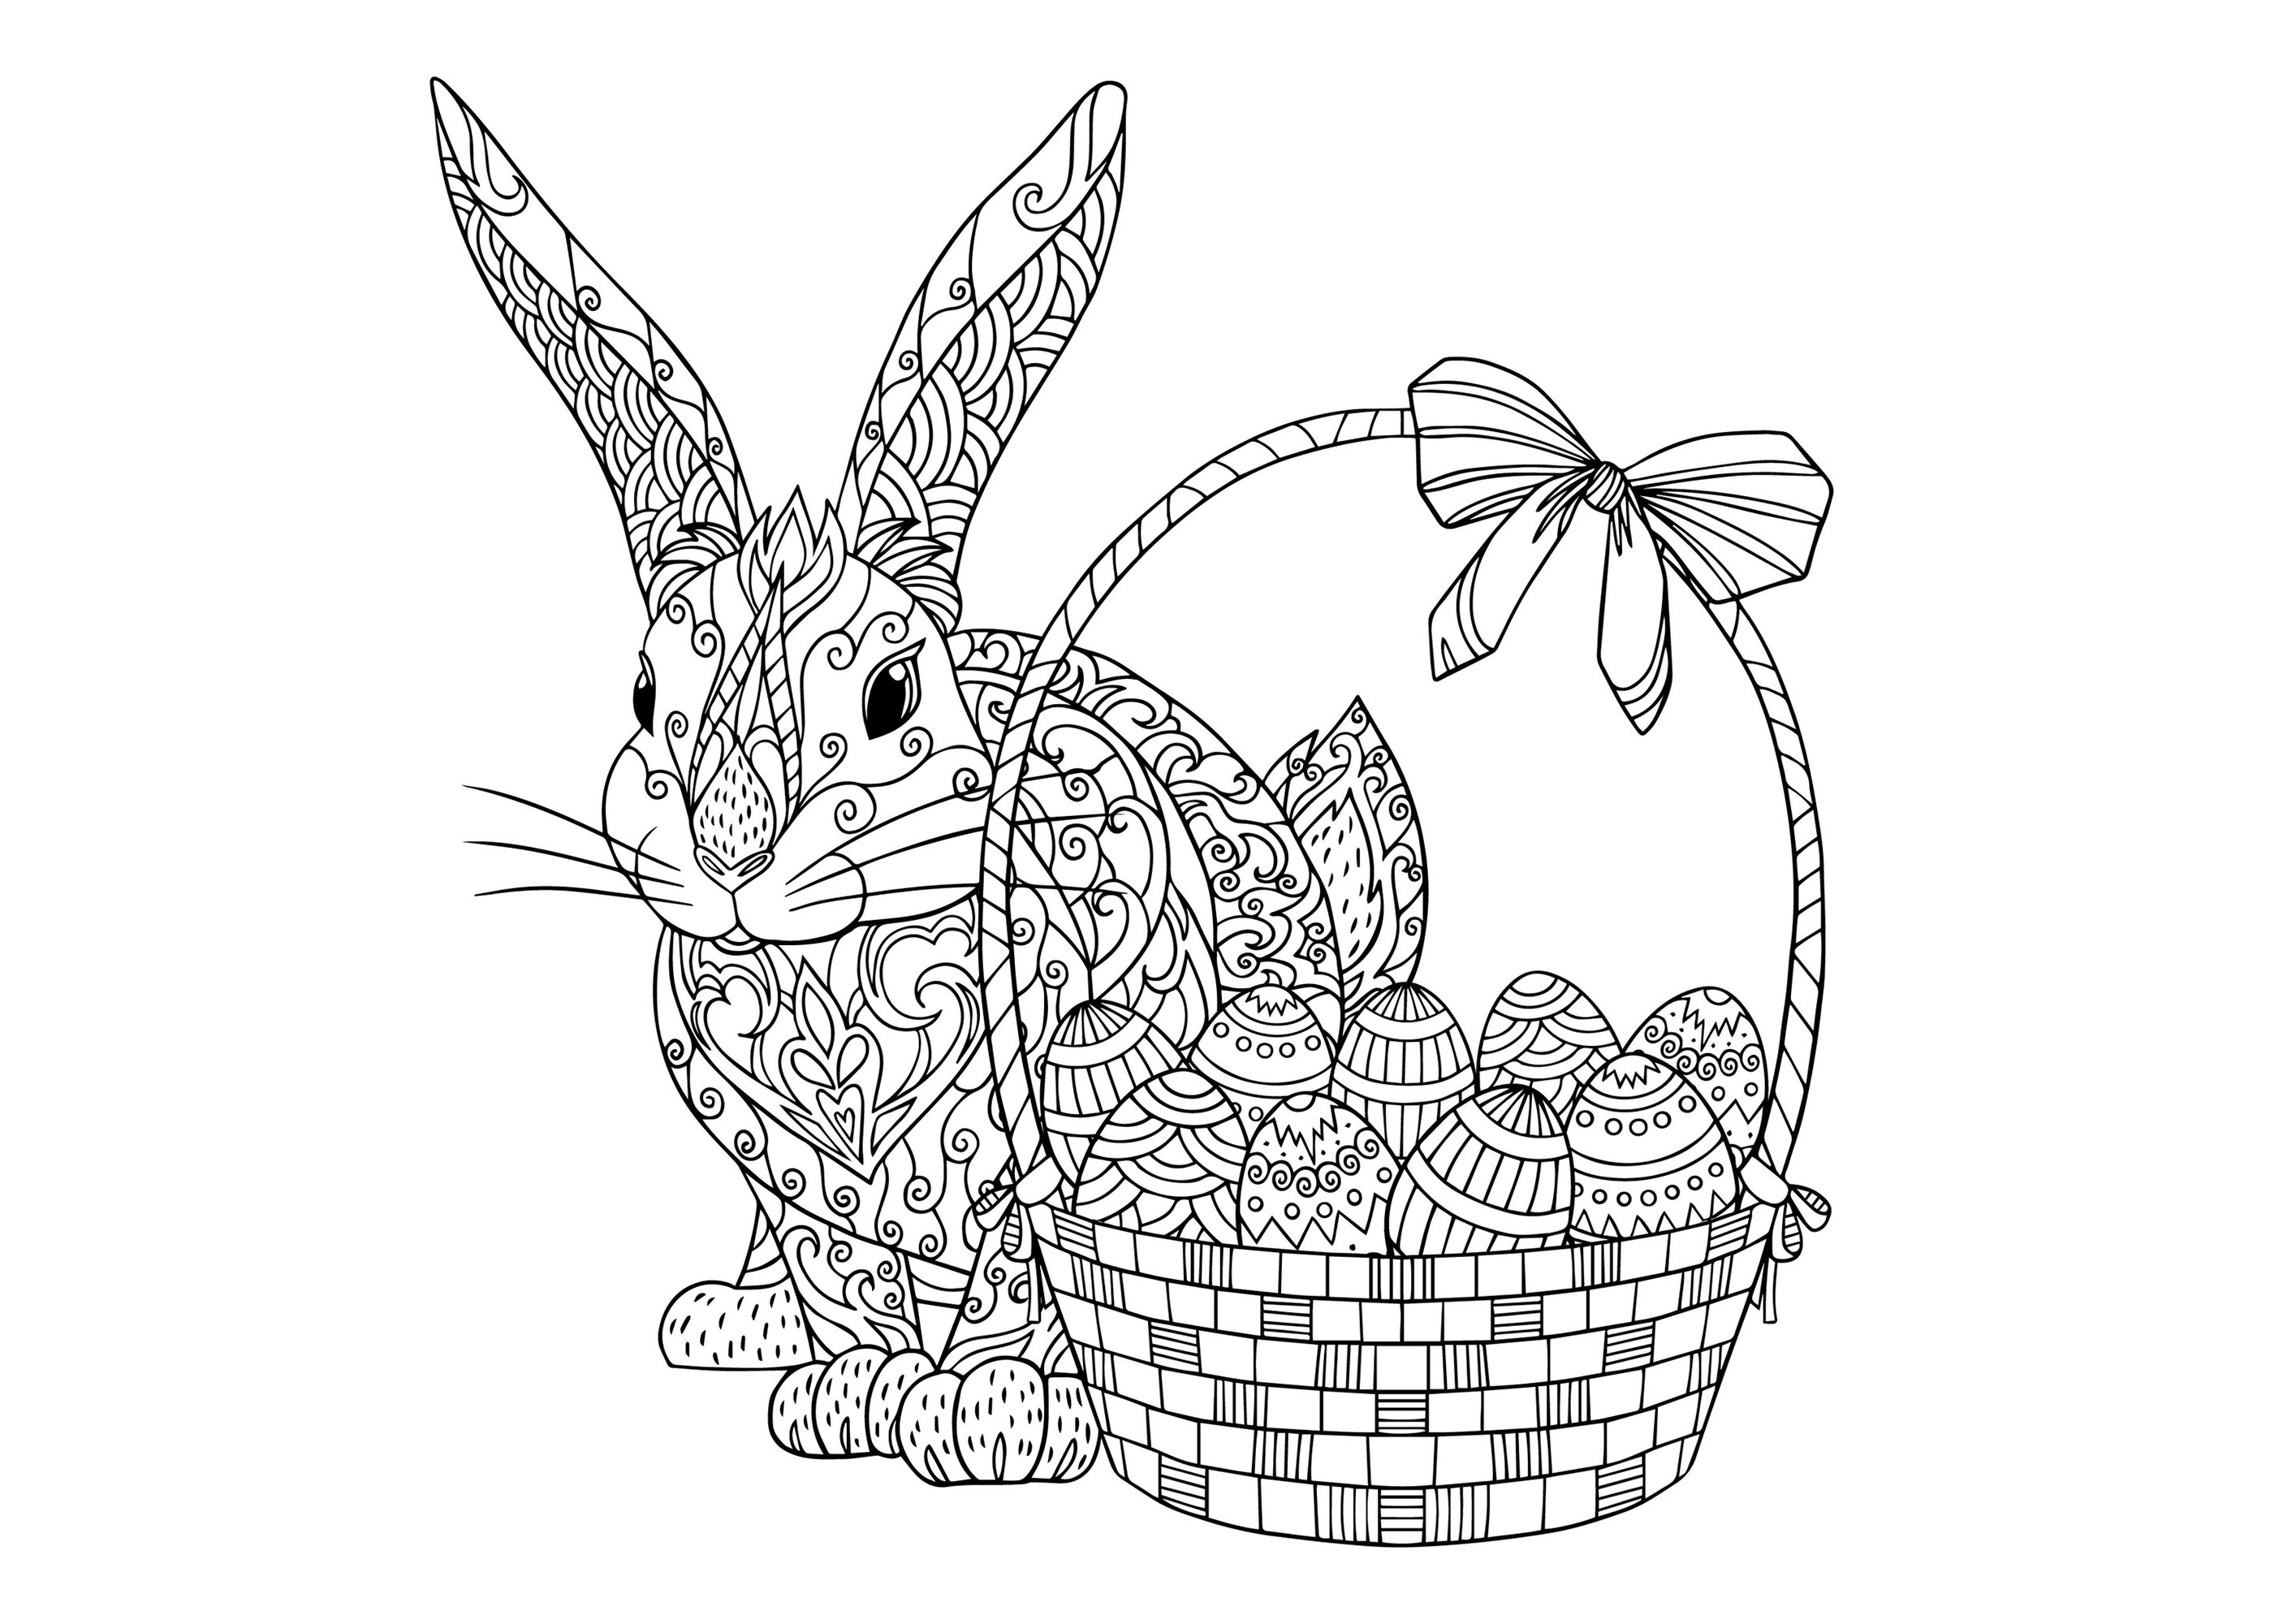 Osterhase mit Korb mit hübschen Eiern mit einfachen und verschiedenen Mustern, Künstler : Daniellabelaya   Quelle : 123rf